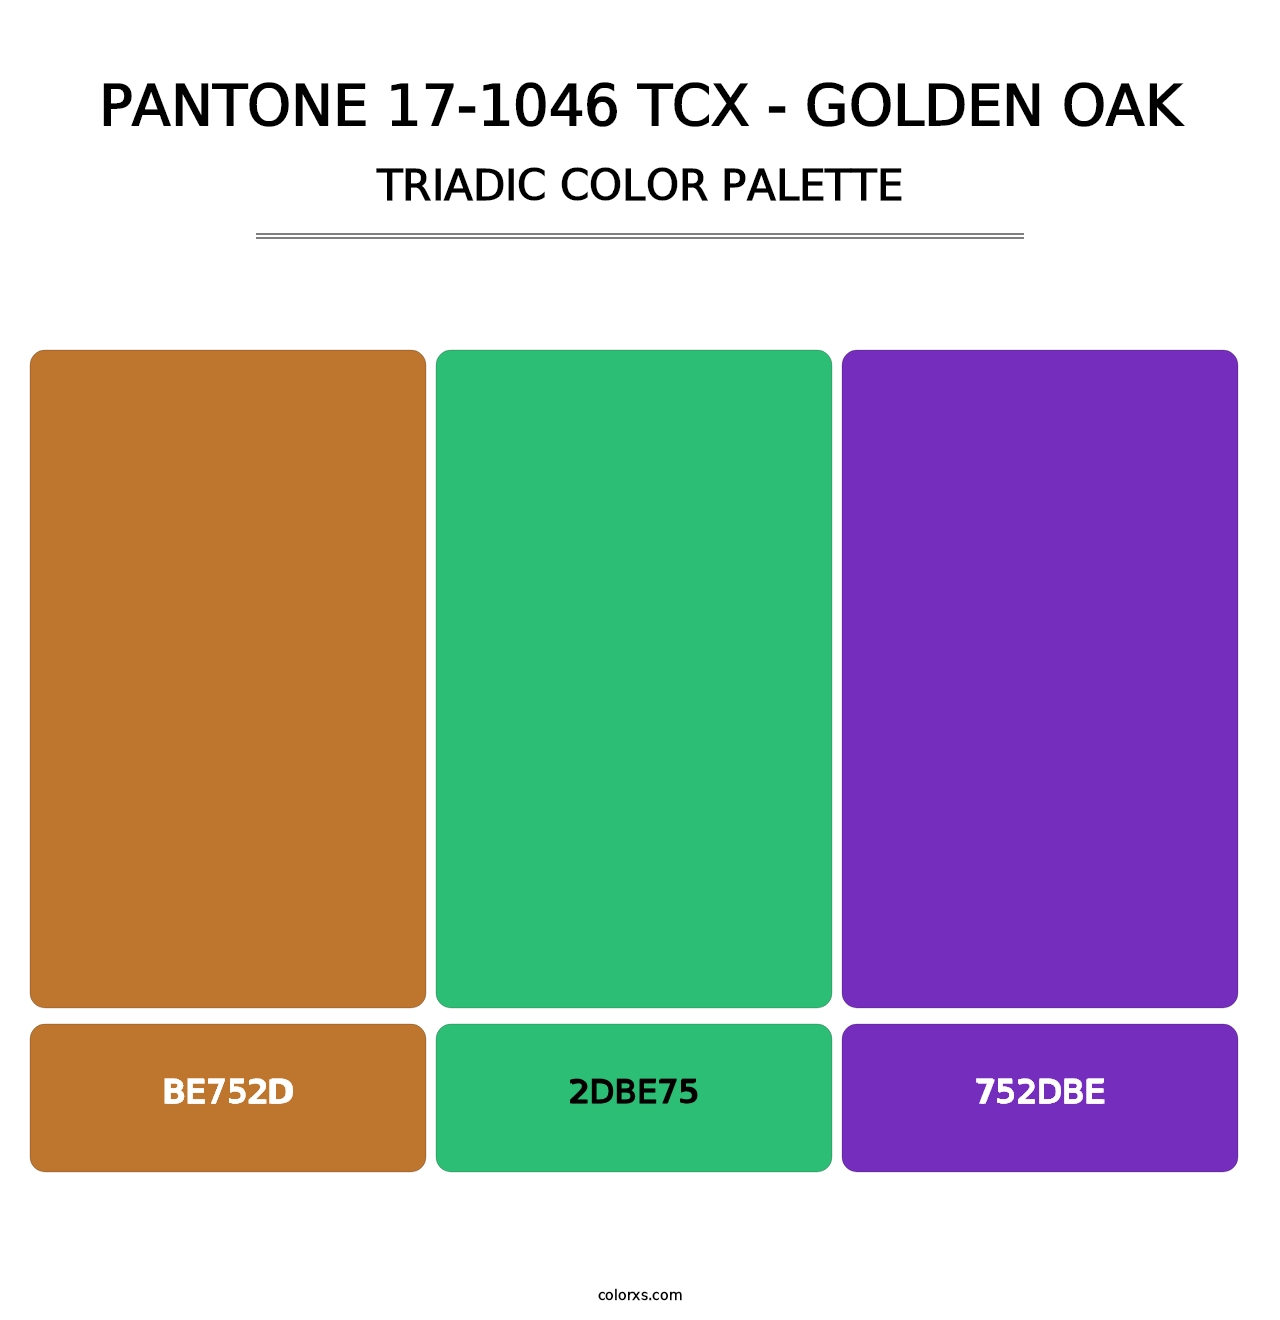 PANTONE 17-1046 TCX - Golden Oak - Triadic Color Palette